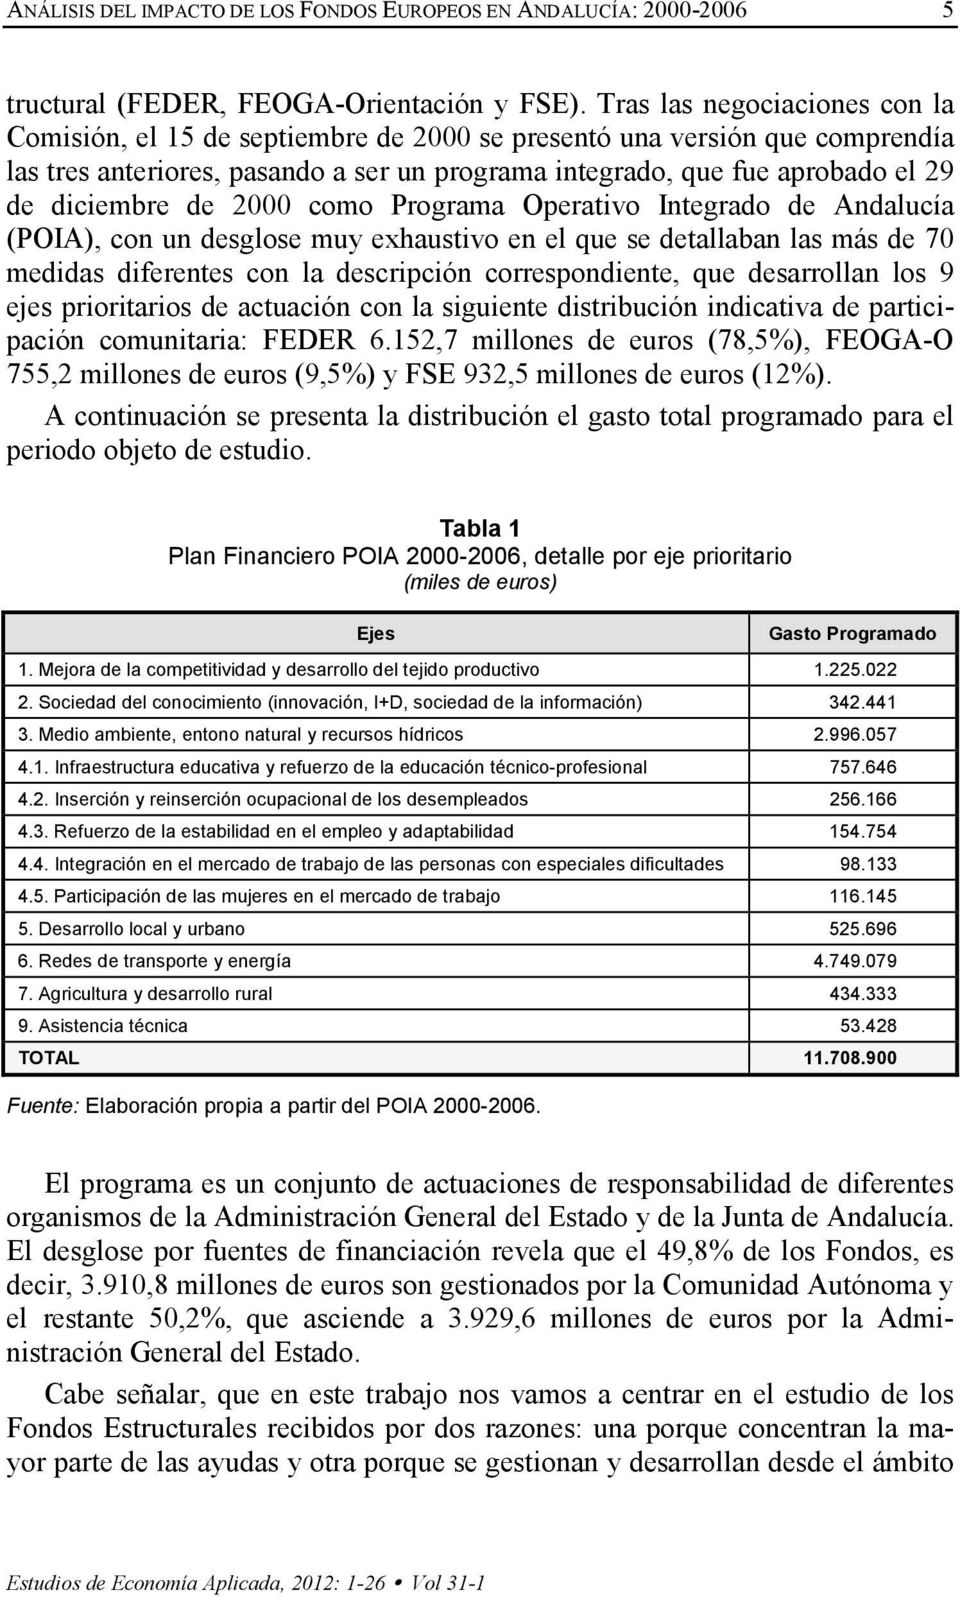 diciembre de 2000 como Programa Operativo Integrado de Andalucía (POIA), con un desglose muy exhaustivo en el que se detallaban las más de 70 medidas diferentes con la descripción correspondiente,